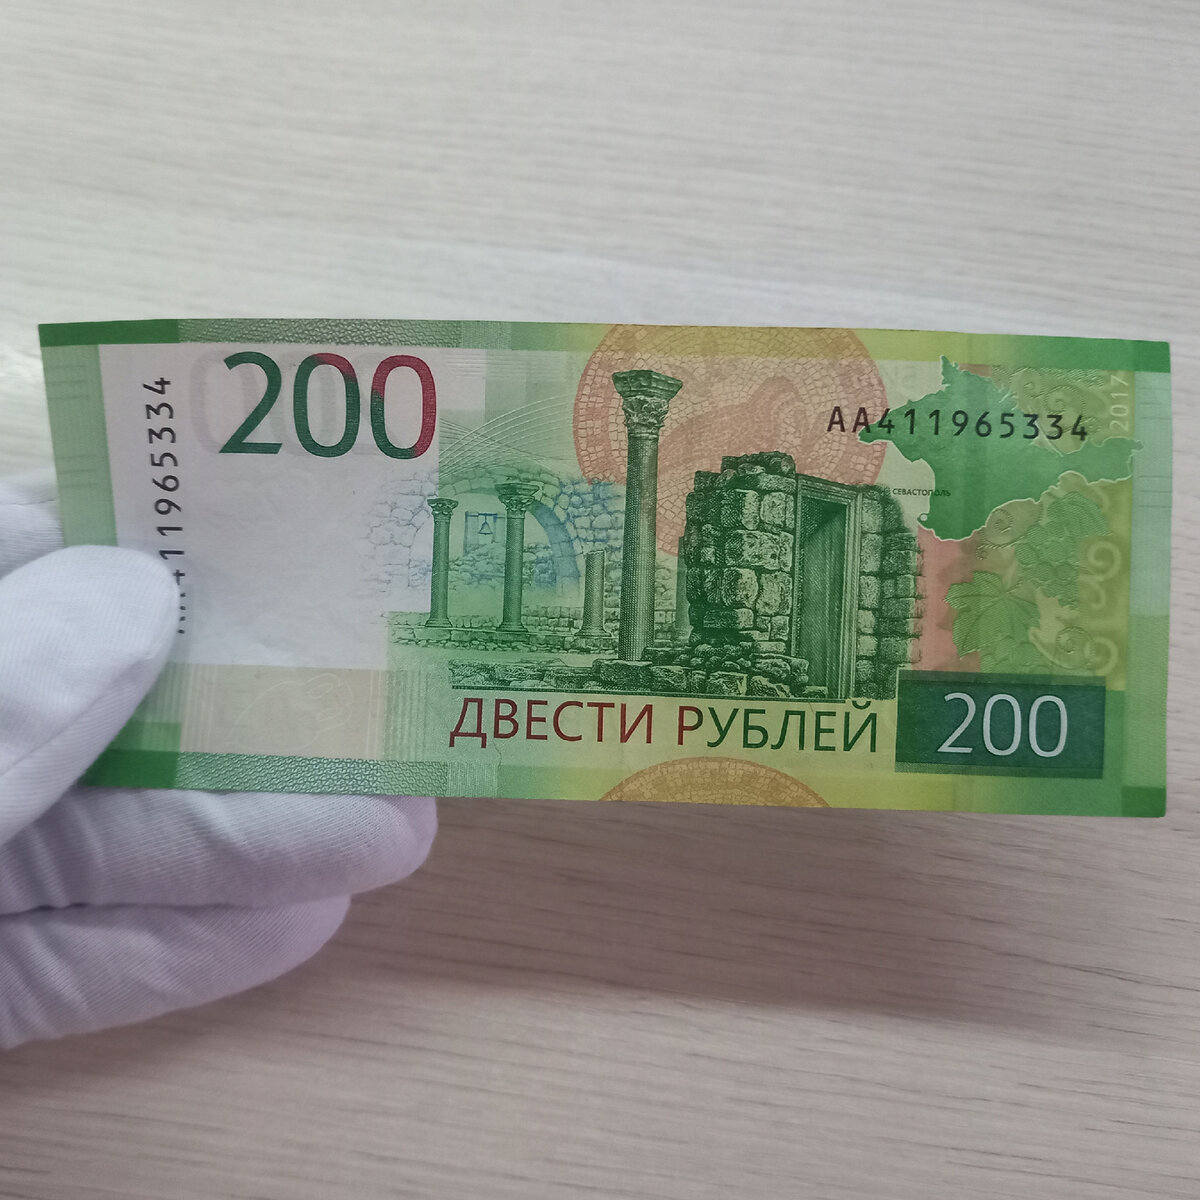 200 рублей продажа. 200 Рублей банкнота. 200 Рублей бумажные. 200 Руб новые. Новая 200 рублевая купюра.